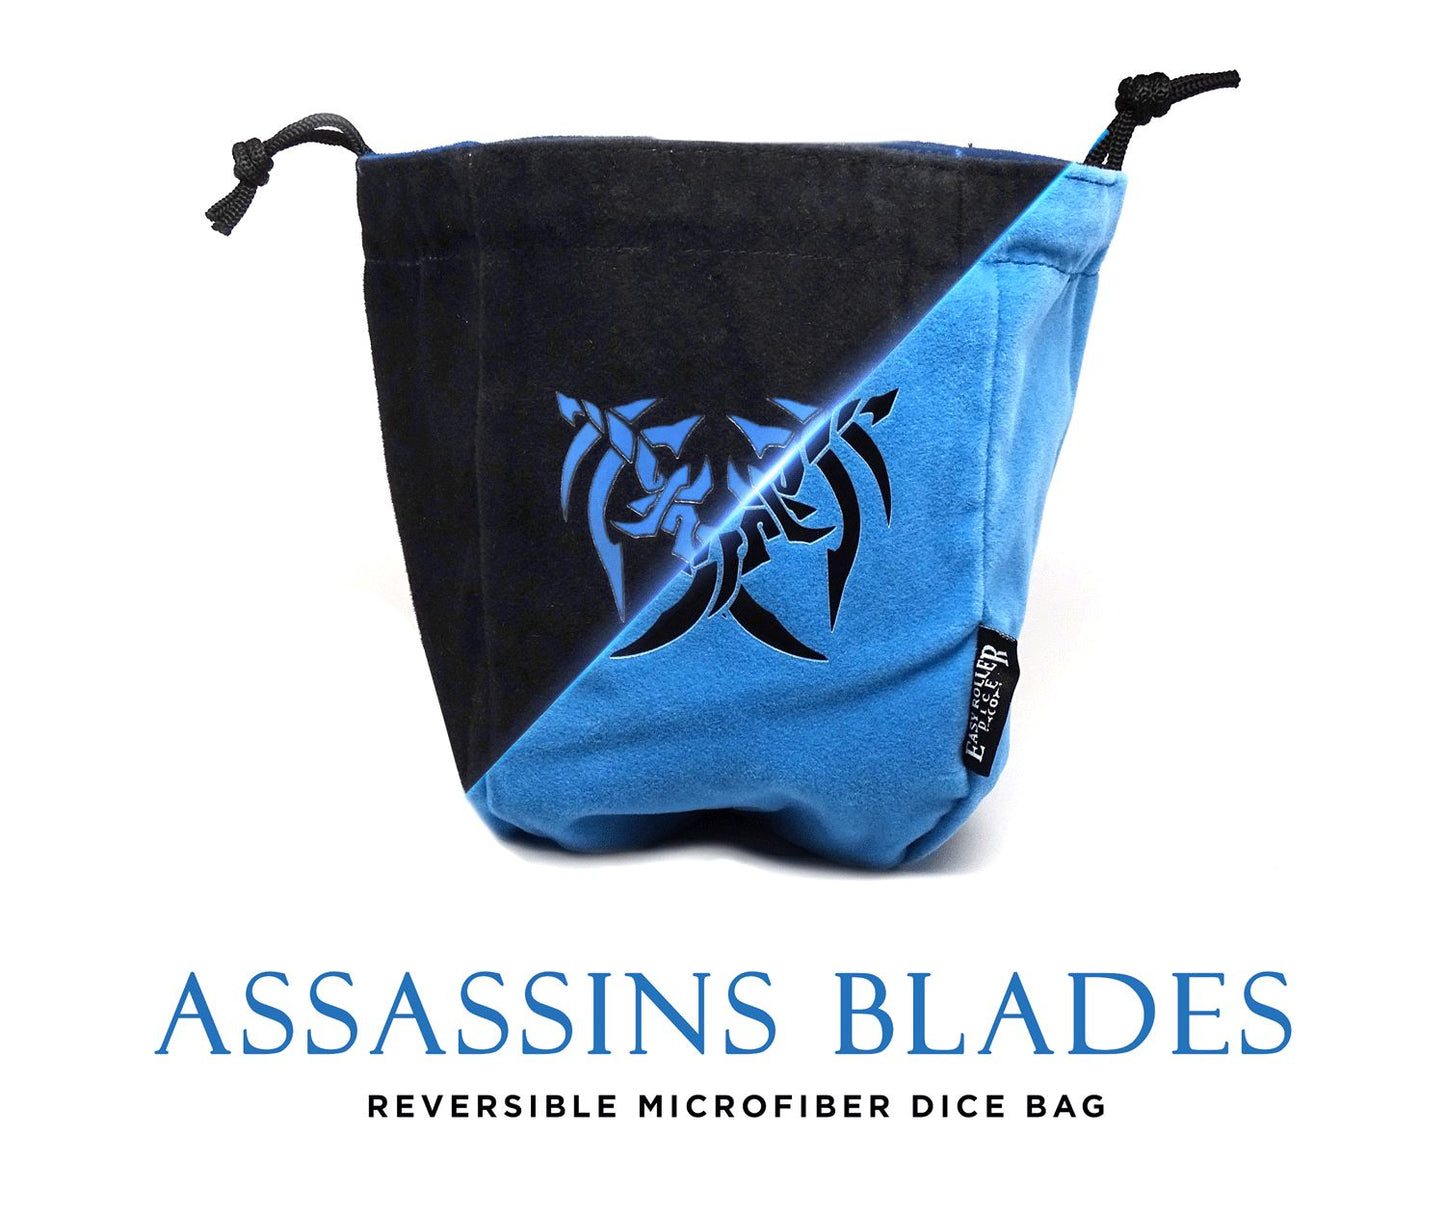 Grand sac à dés autoportant réversible en microfibre Assassin's Blades